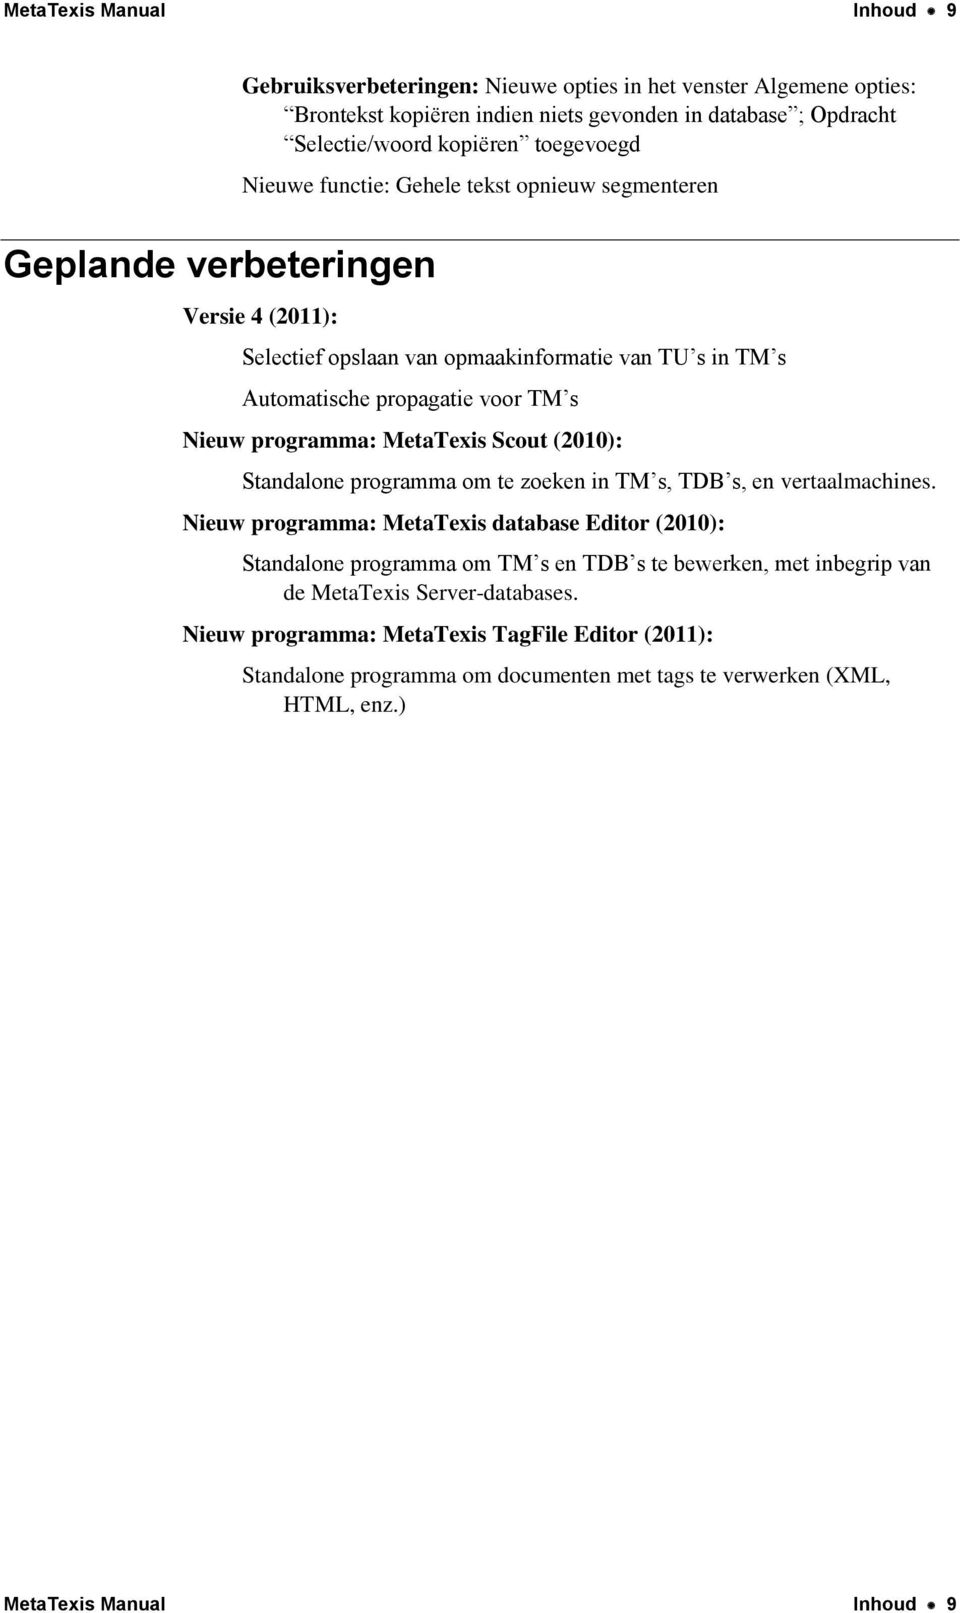 Nieuw programma: MetaTexis Scout (2010): Standalone programma om te zoeken in TM s, TDB s, en vertaalmachines.